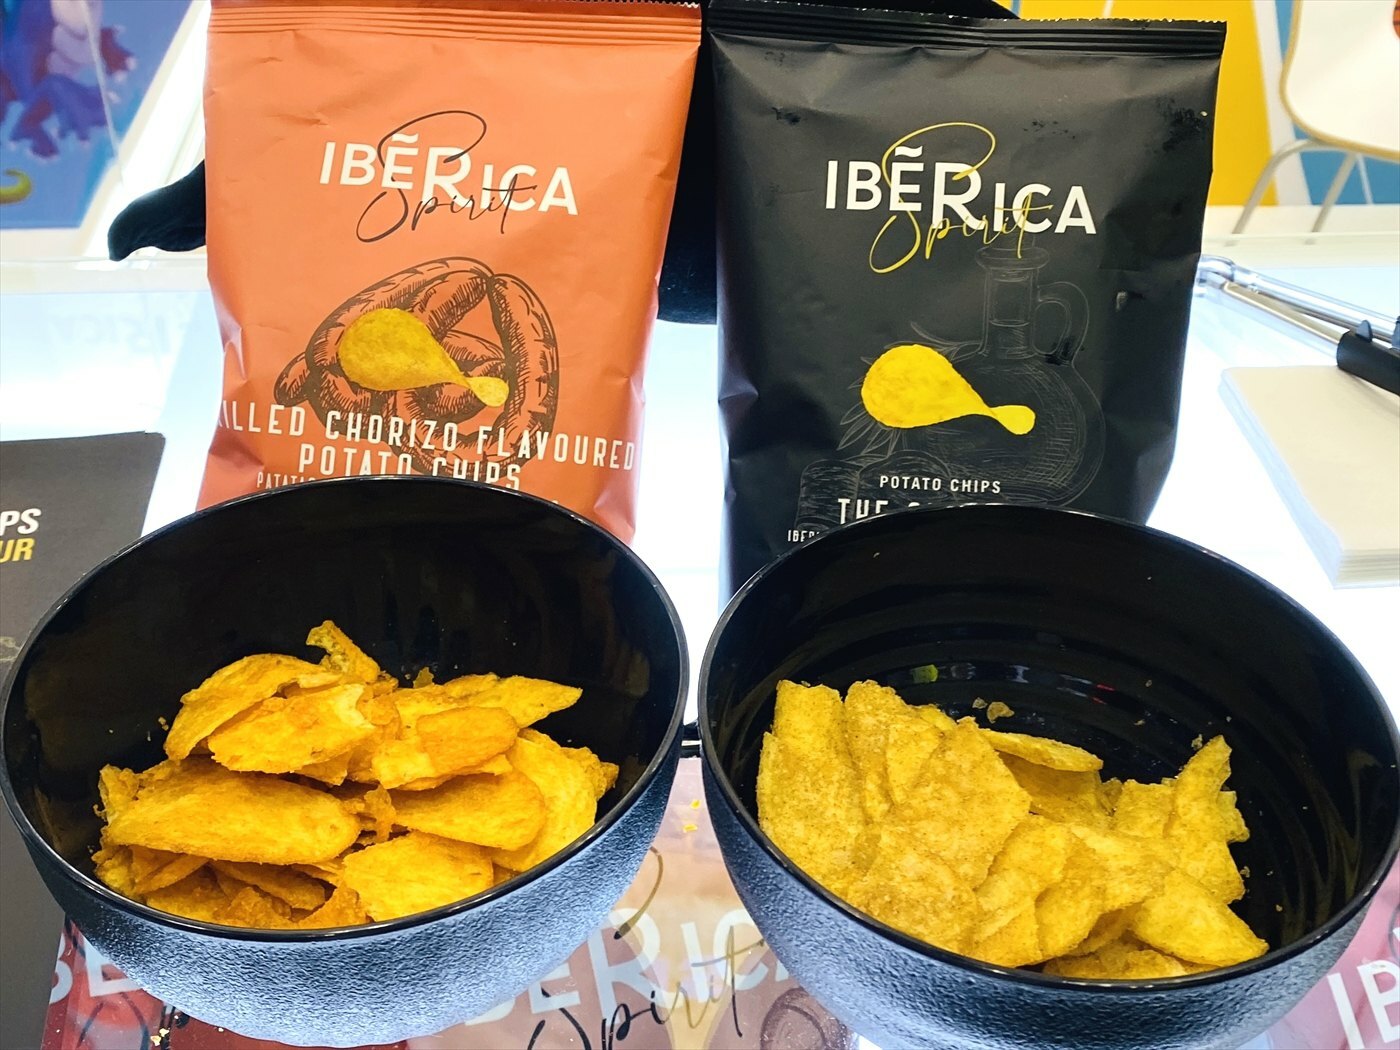 IBERICA SPIRIT Spanish Potato Chips